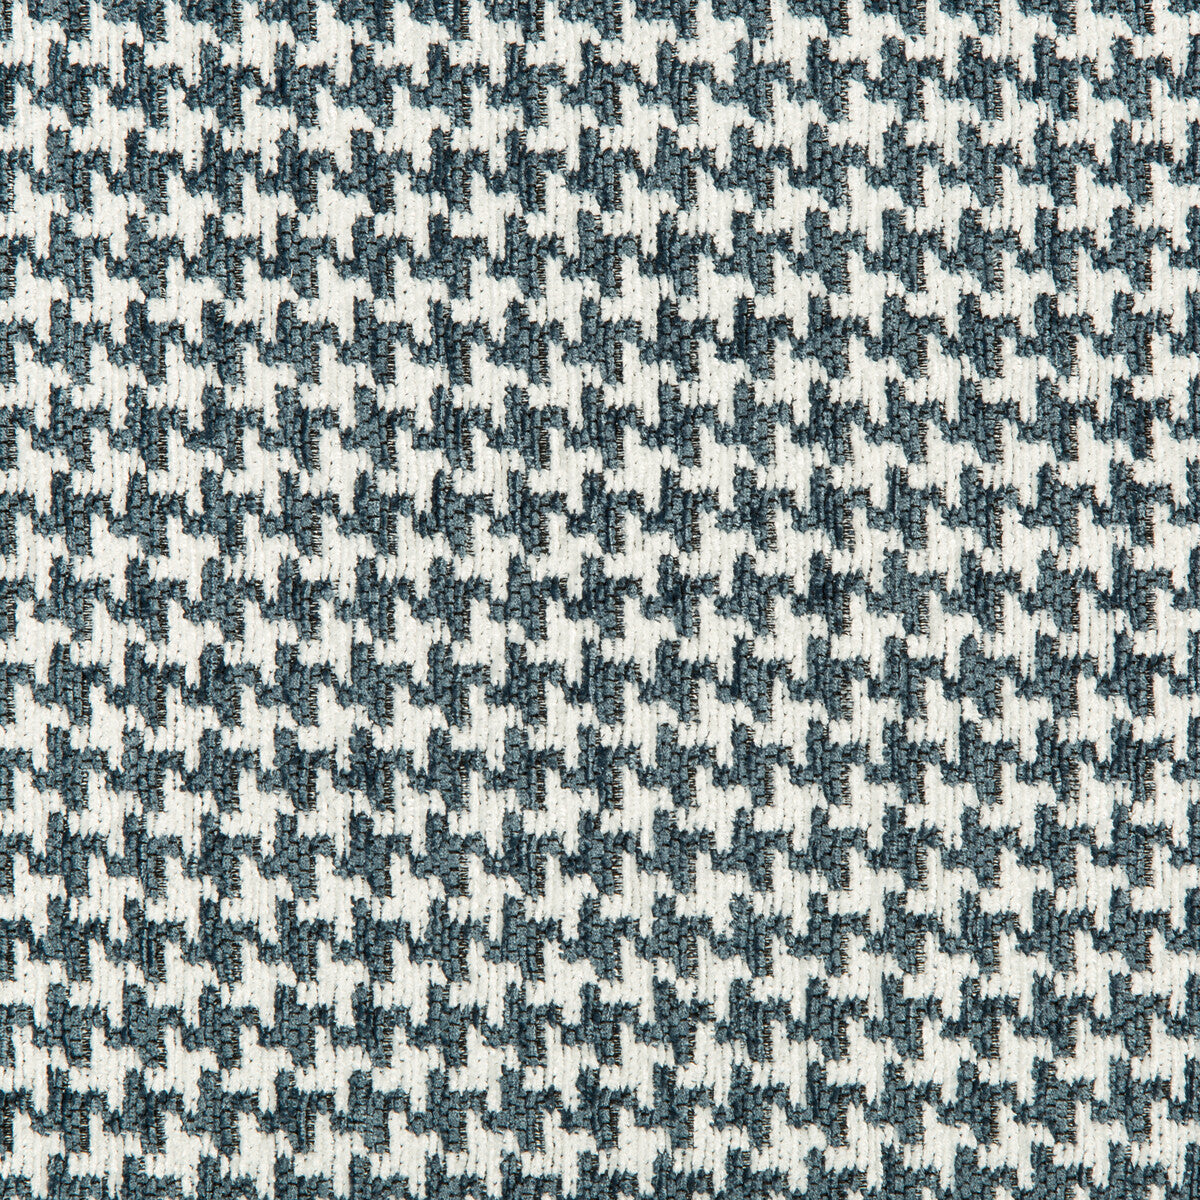 Kravet Design fabric in 35693-51 color - pattern 35693.51.0 - by Kravet Design